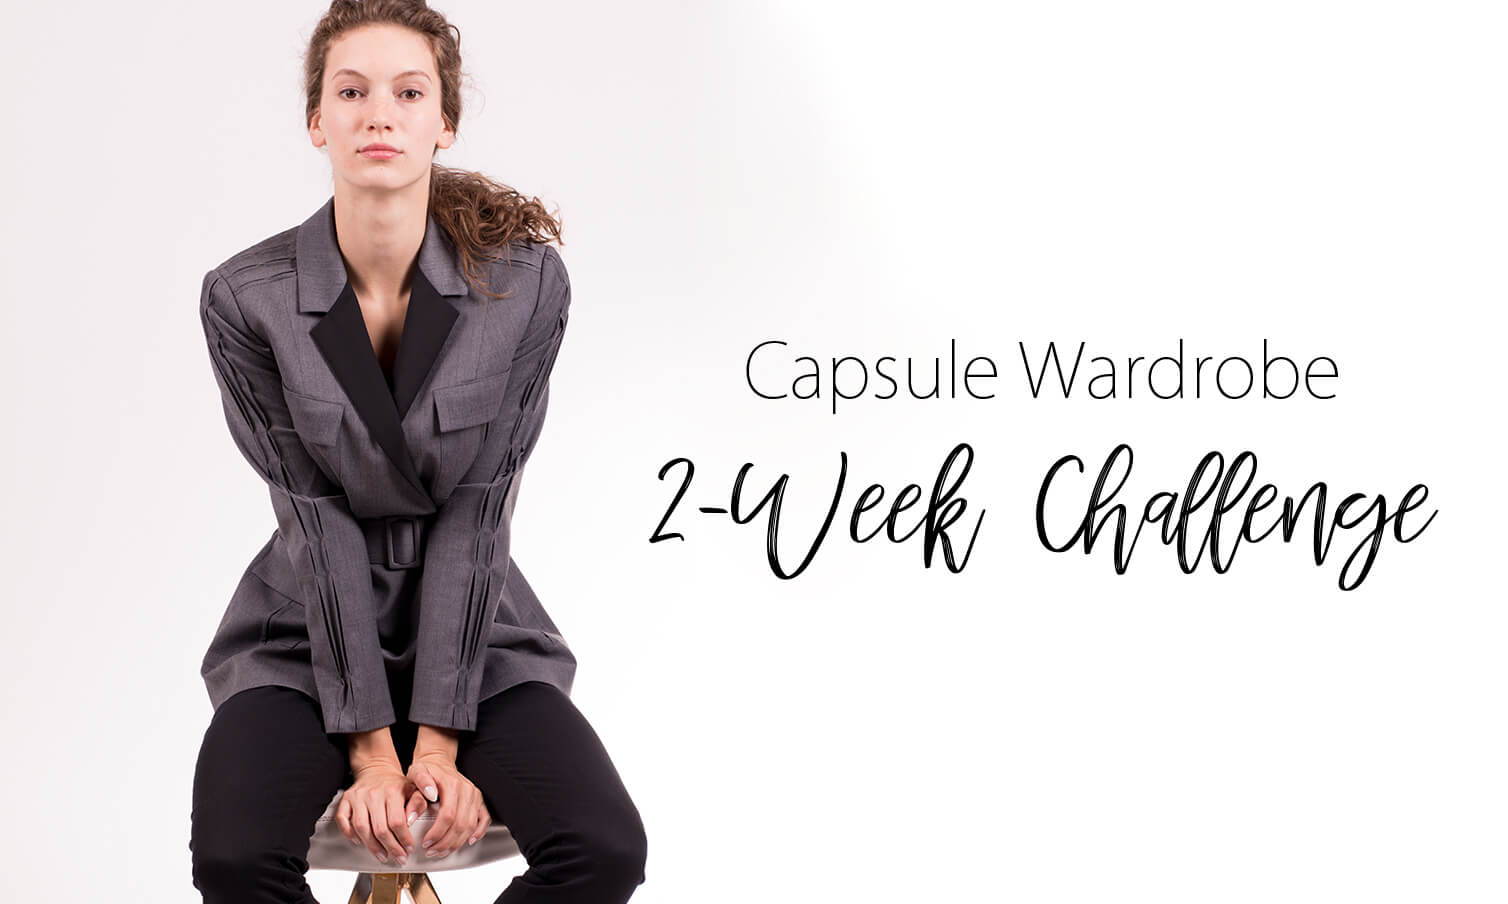 CAPSULE WARDROBE 2-WEEK CHALLENGE